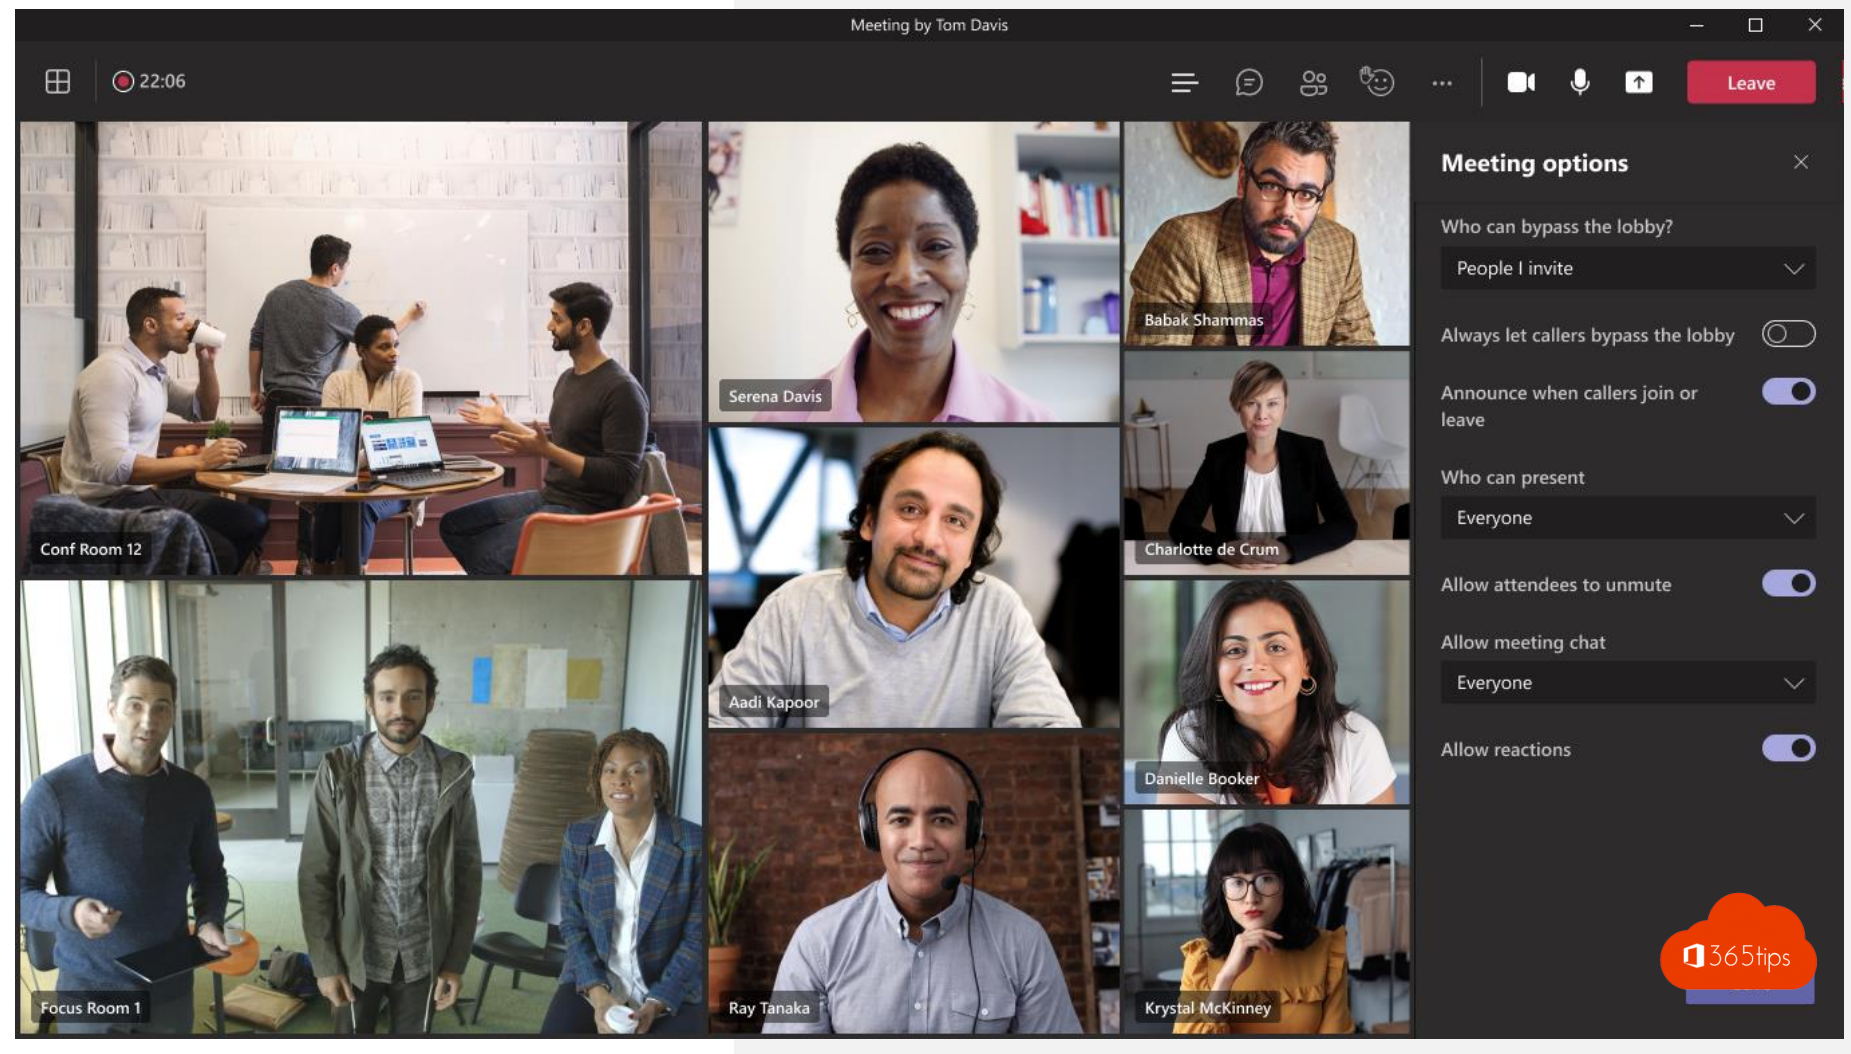 Wie kann man nur eingeladenen Personen die Teilnahme an einem Microsoft Teams Meeting ermöglichen?